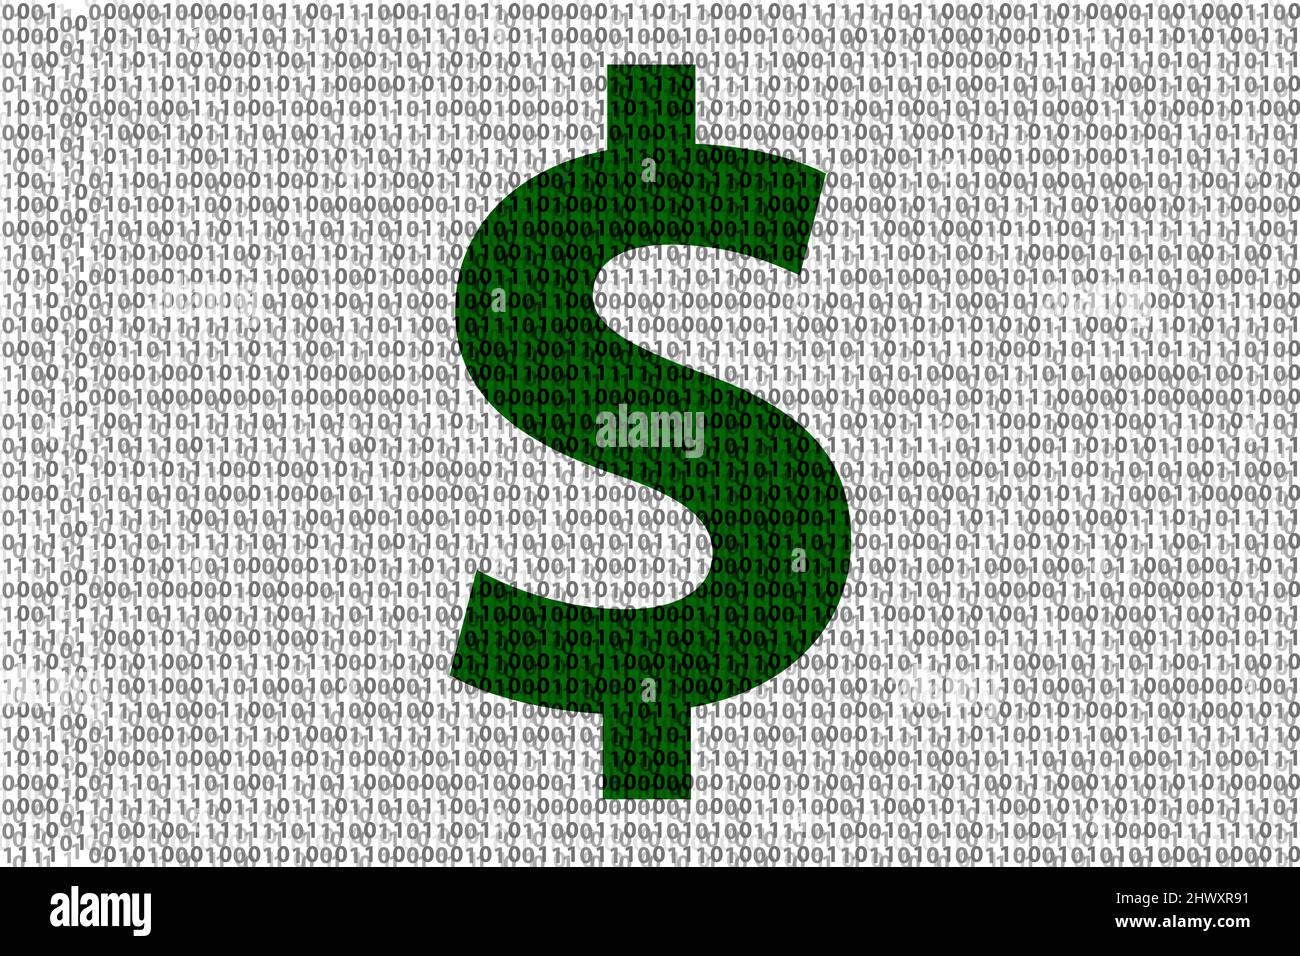 Dollar-Währungssymbol im Binärcode, bestehend aus 0 und 1. Stellt die Sicherheit digitaler Cyberbanken und Hacker-Angriffe dar Stockfoto